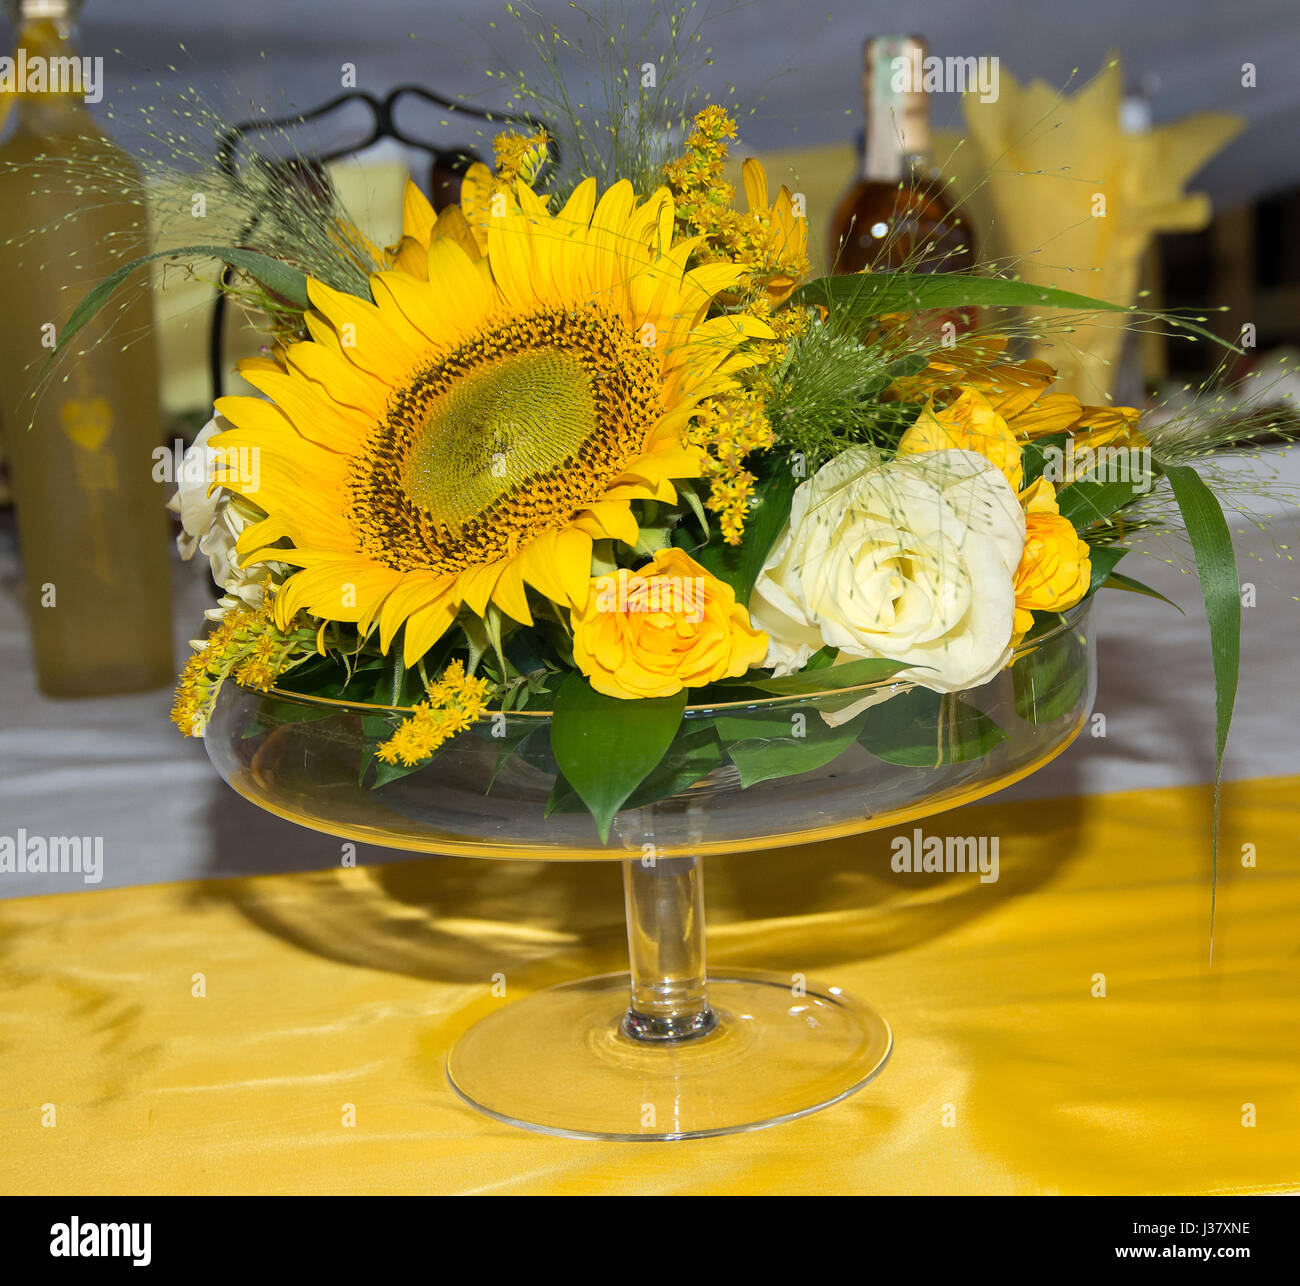 Décoration de masse avec des fleurs. Un bouquet de roses blanches et jaunes, de tournesols et de plantes sauvages Banque D'Images